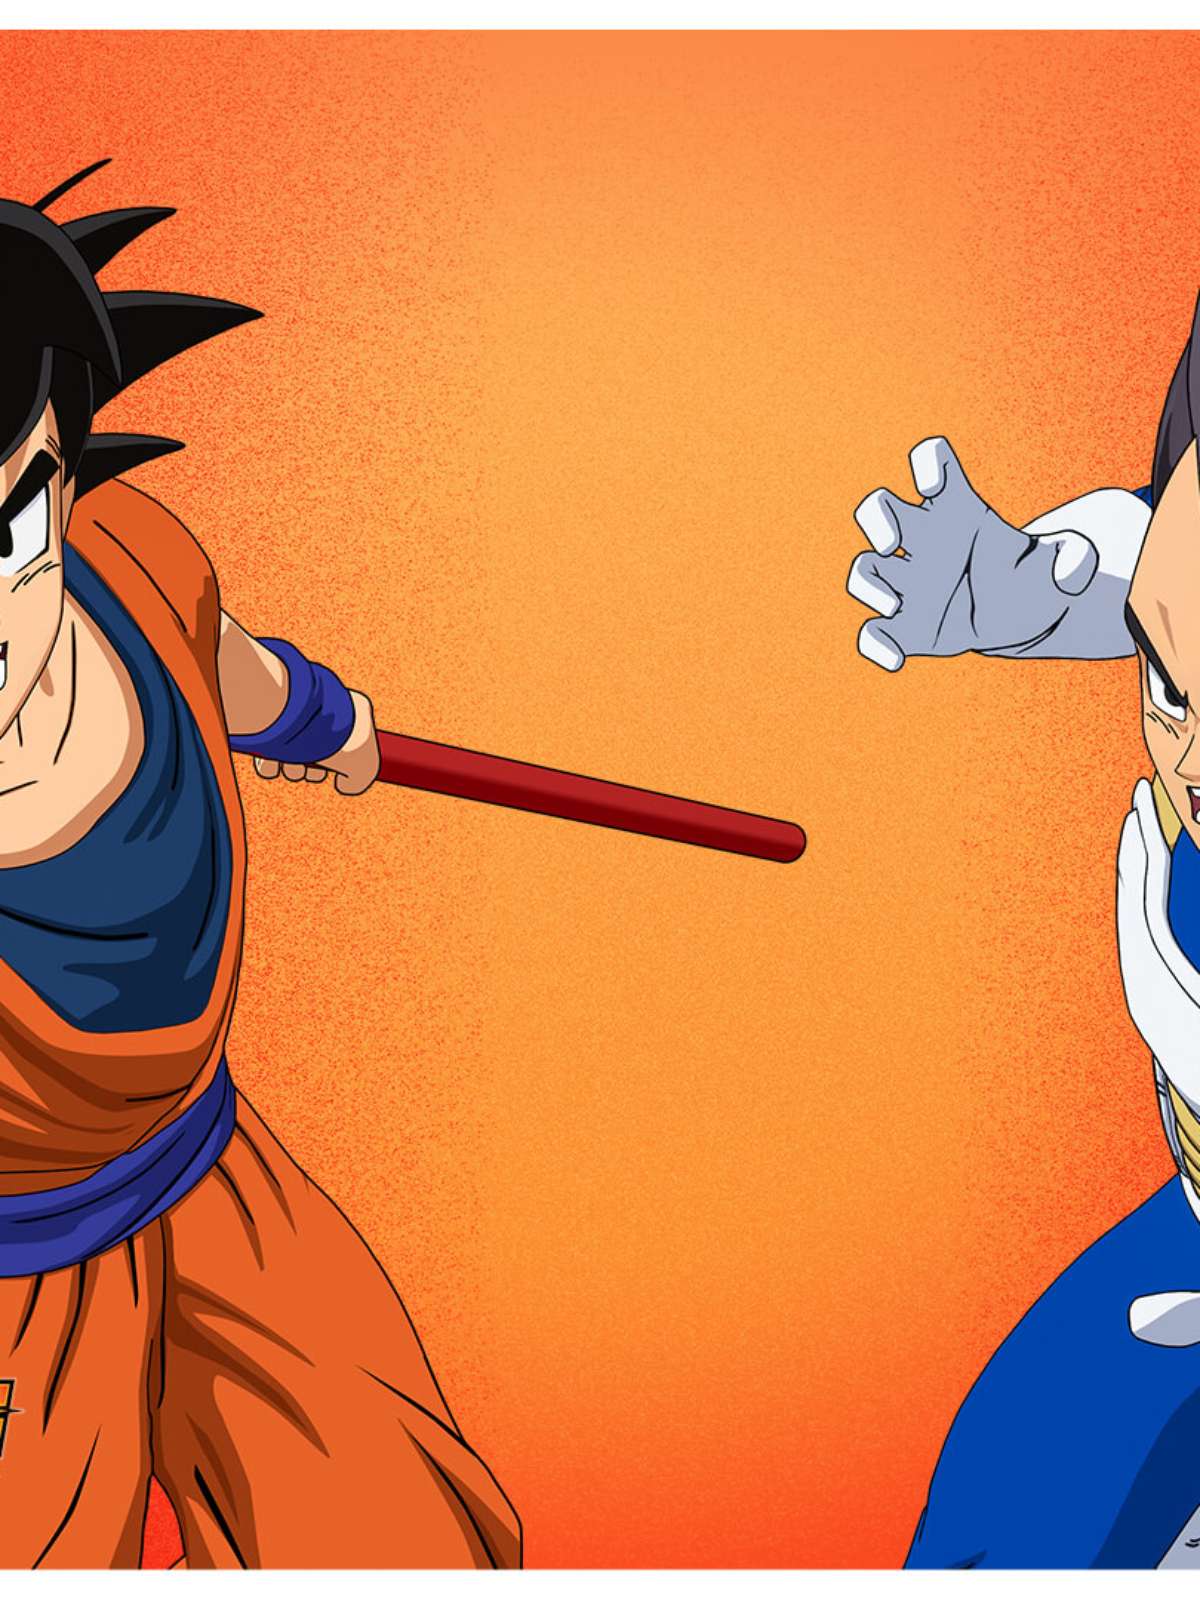 Dragon Ball no Fortnite: Goku, Vegeta e outros personagens chegam ao jogo